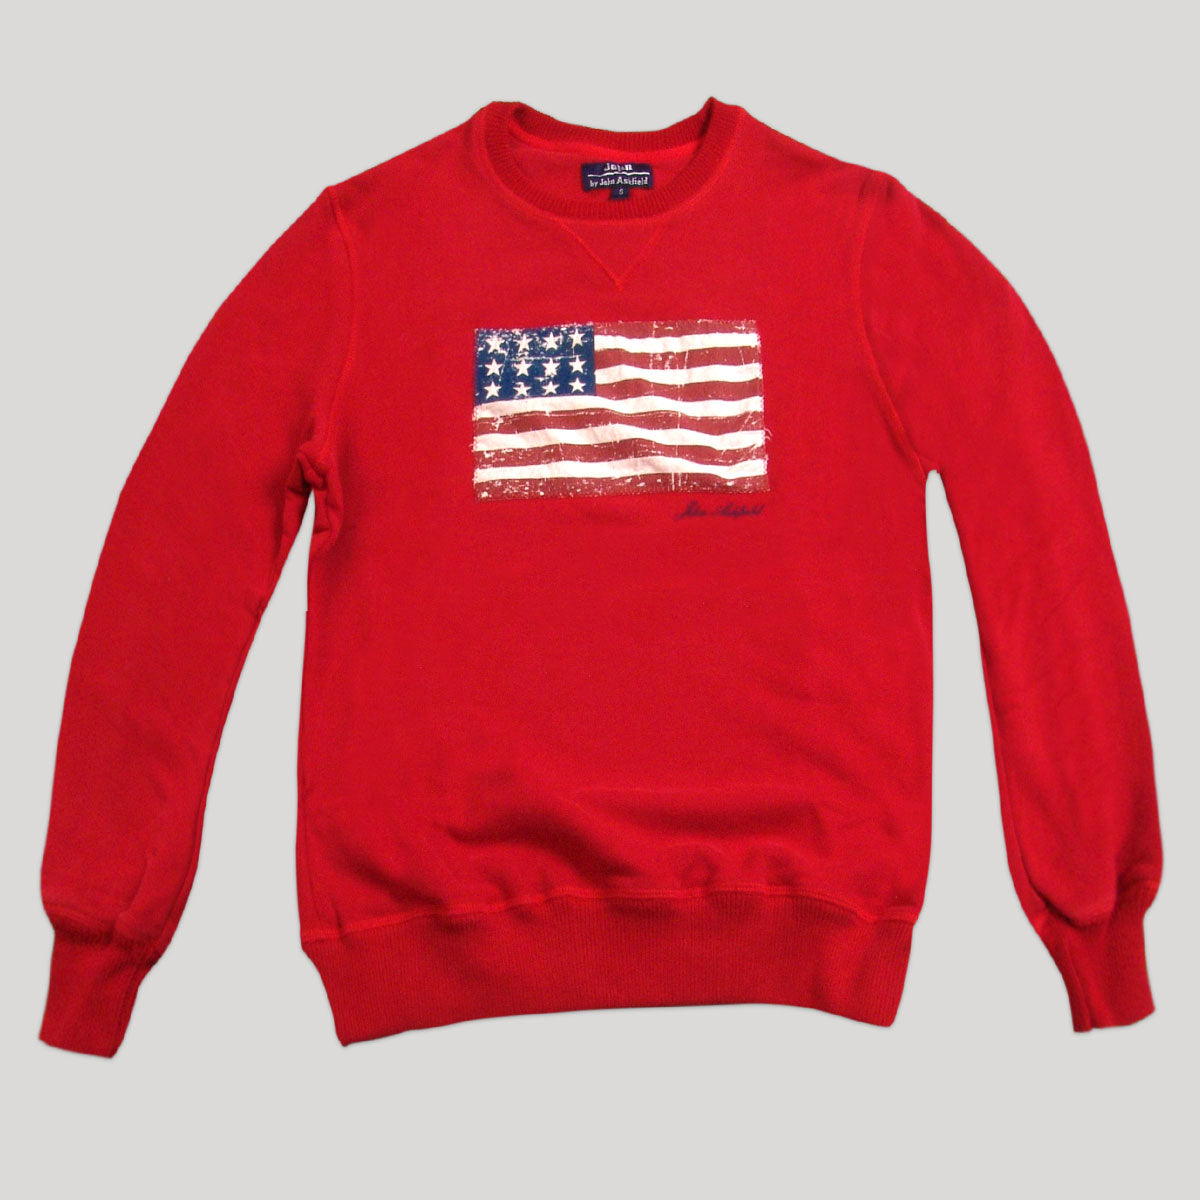 USA Flag Sweatshirt for Man